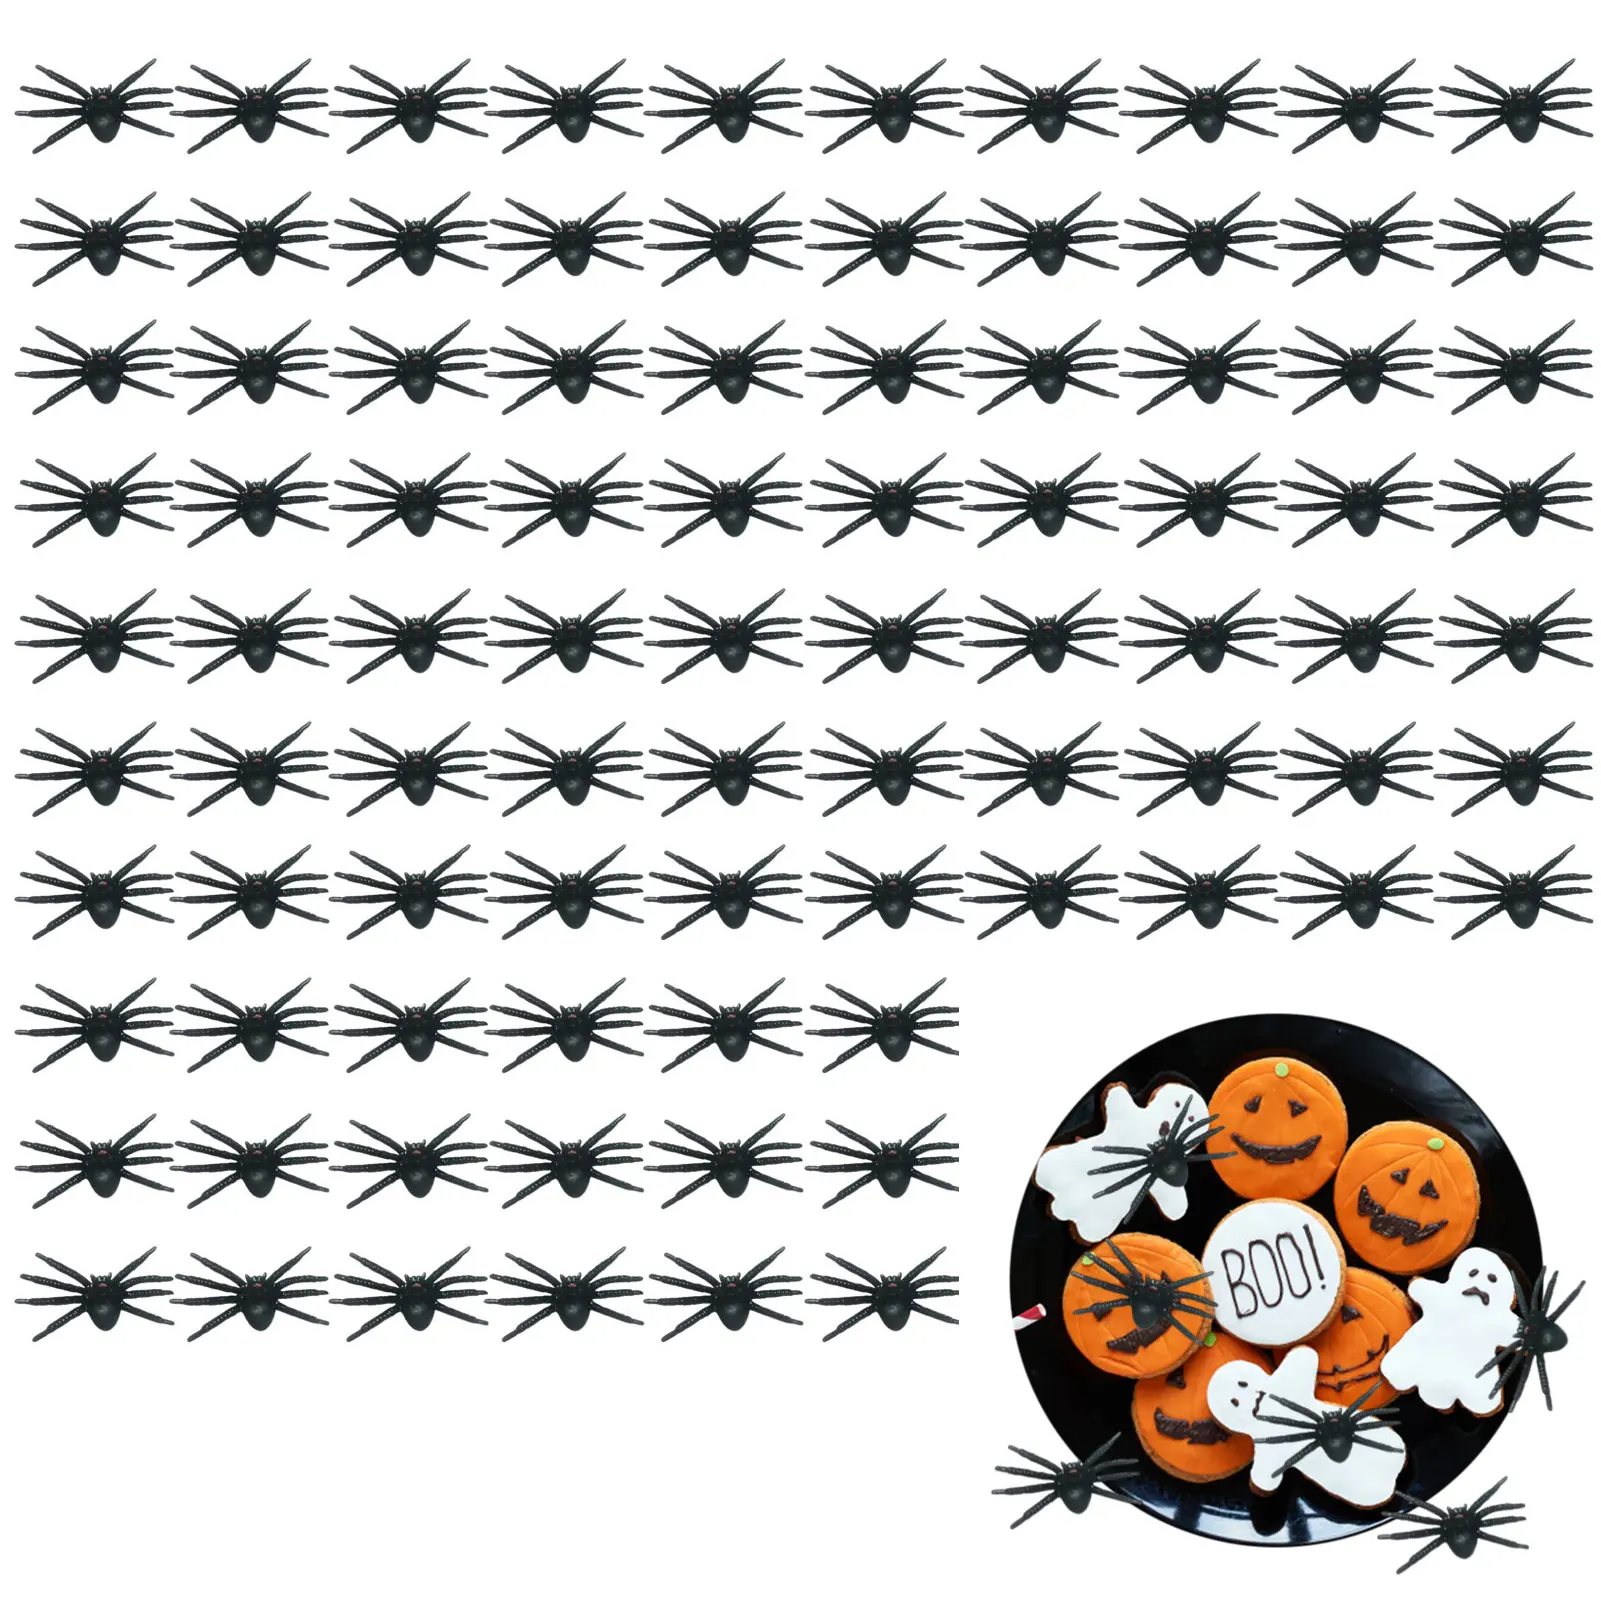 

Паук на Хэллоуин, 100 шт., реалистичный паук, черные пауки, искусственный паук, розыгрыш, реквизит, шутка, игрушки для страшного Хэллоуина